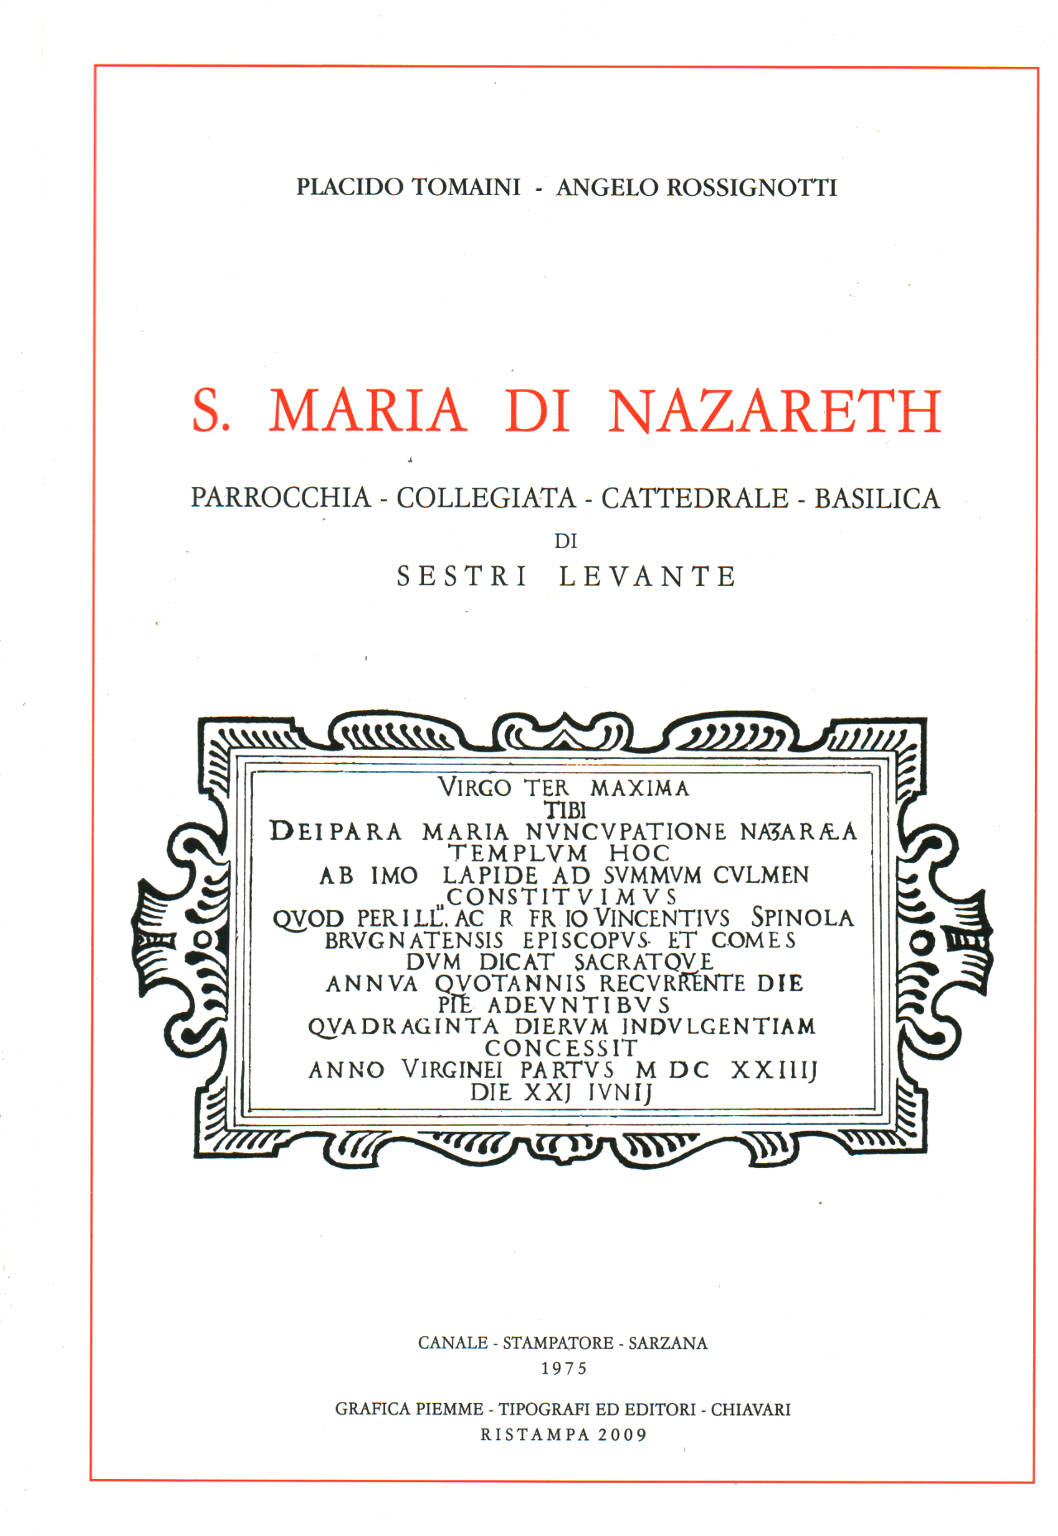 Sainte Marie de Nazareth, Placido Tomaini Angelo Rossignotti